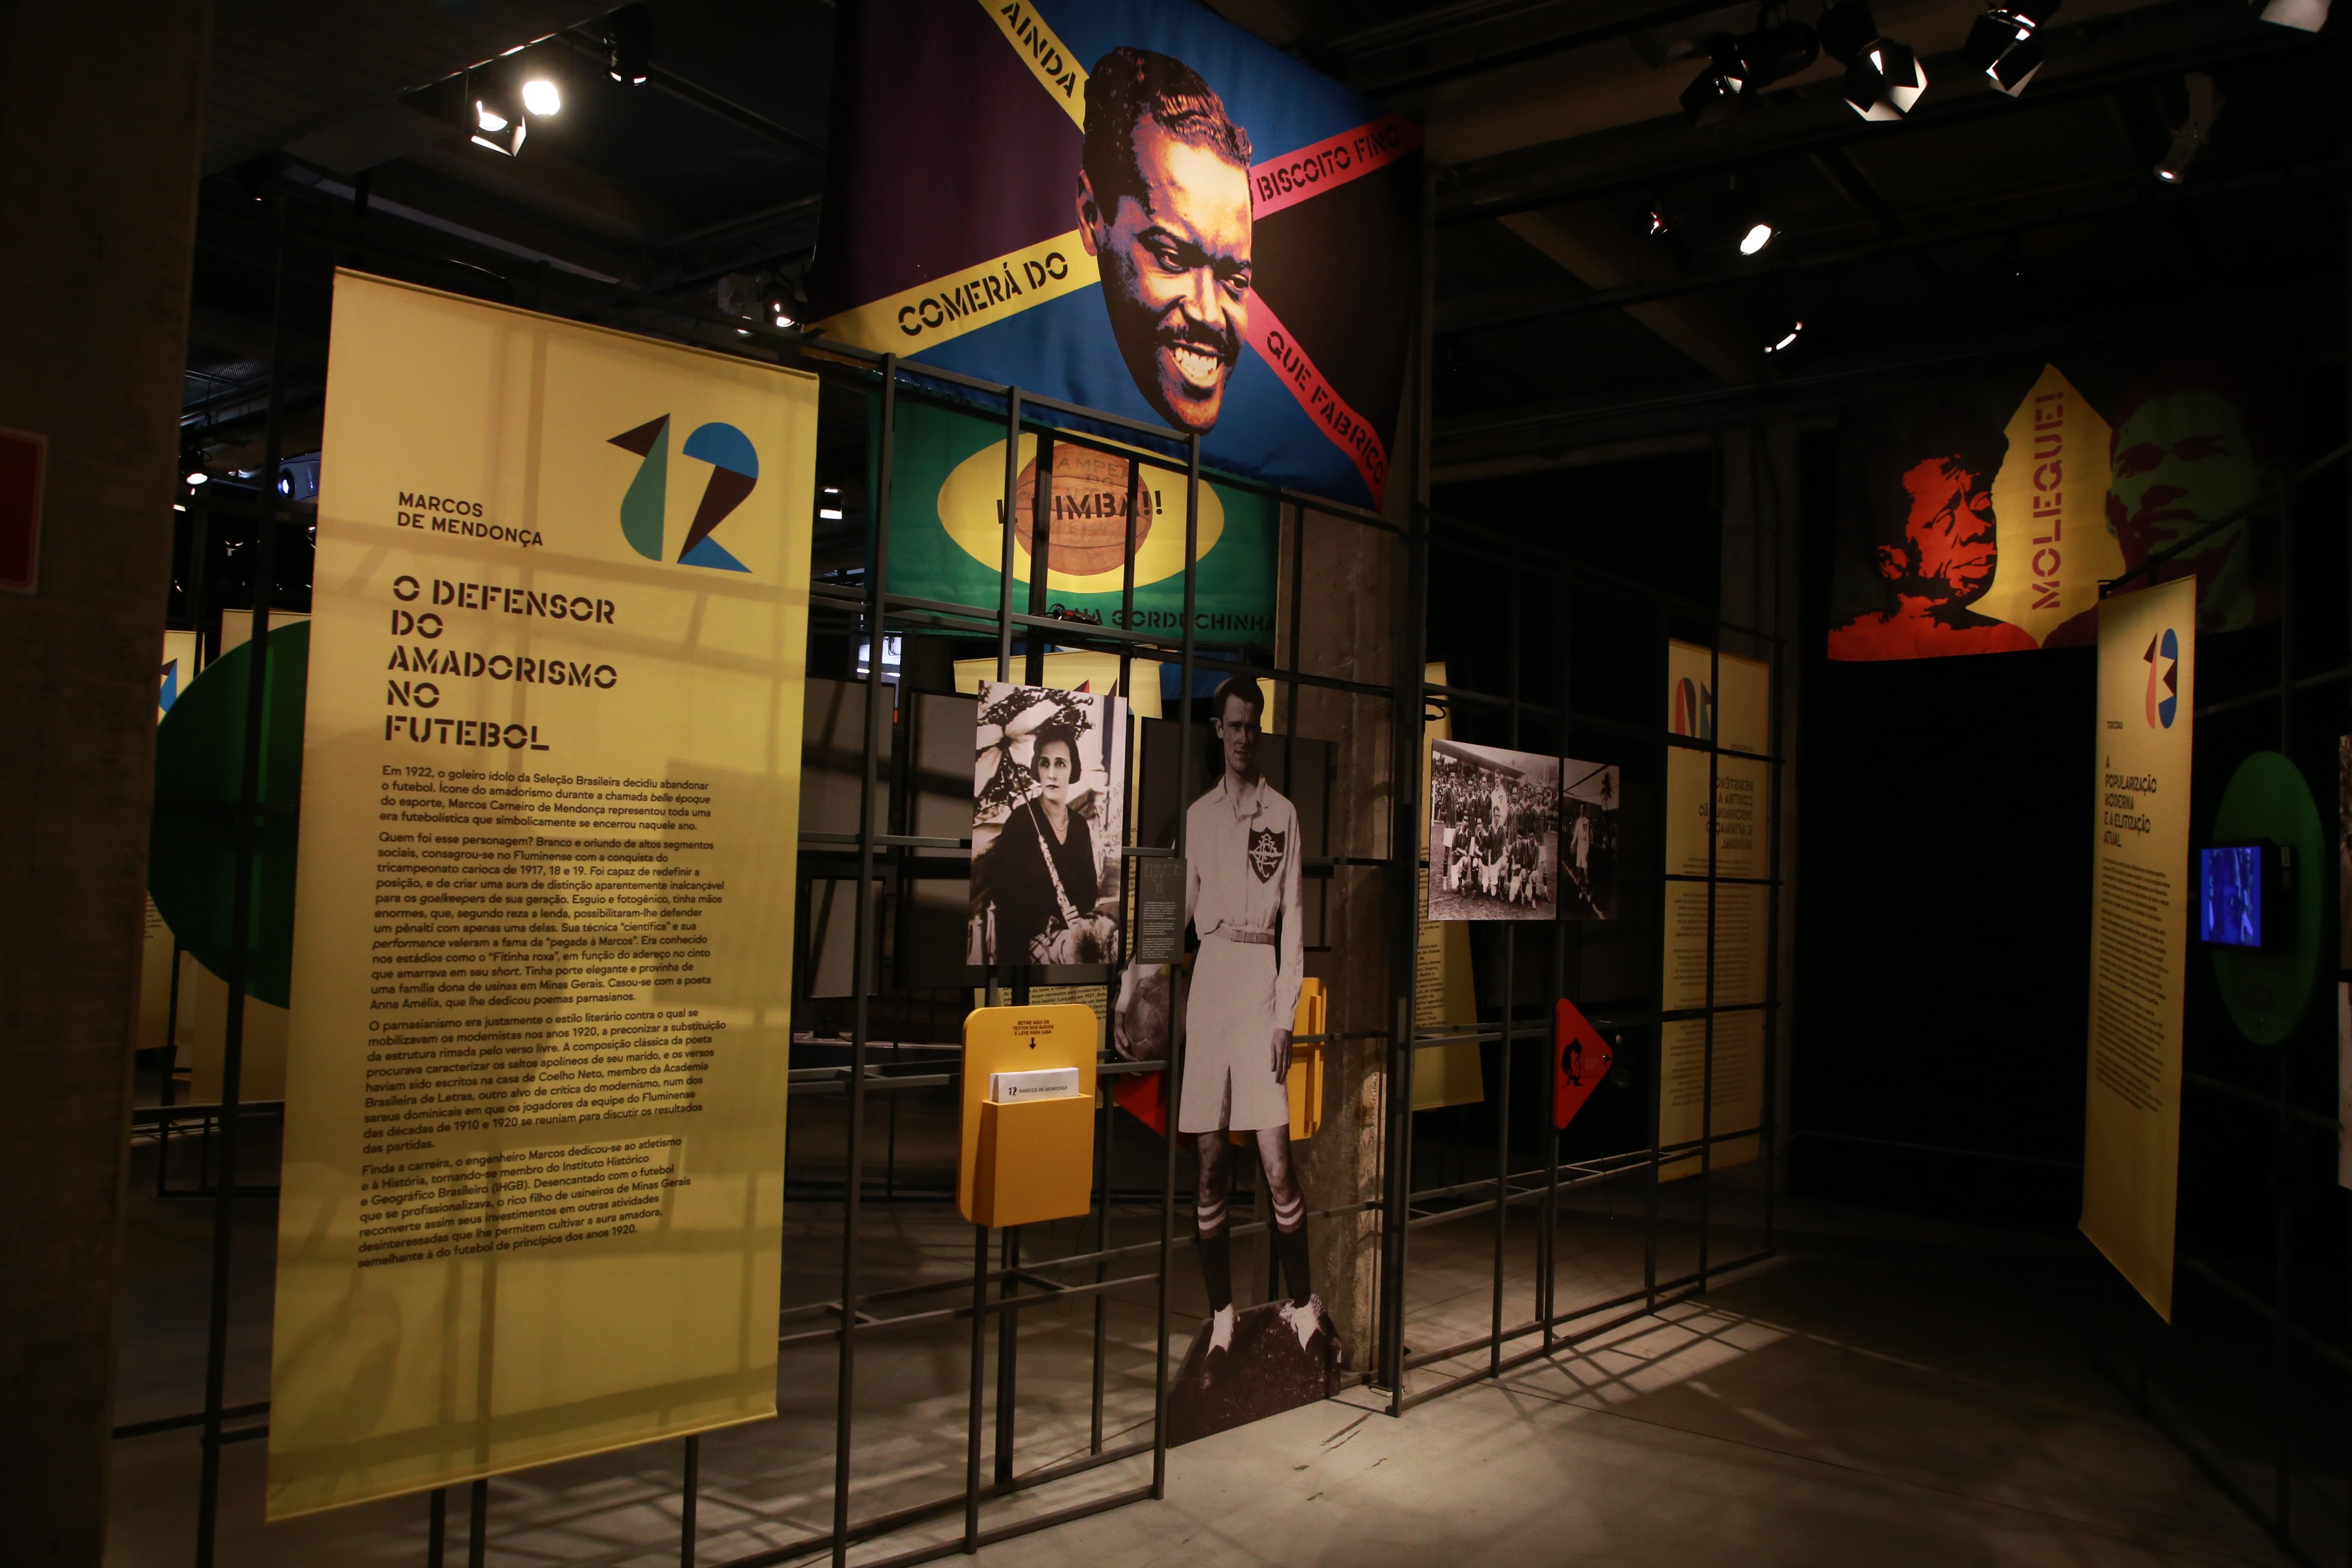 Museu do Futebol promove curso de atualização de regras e uso do